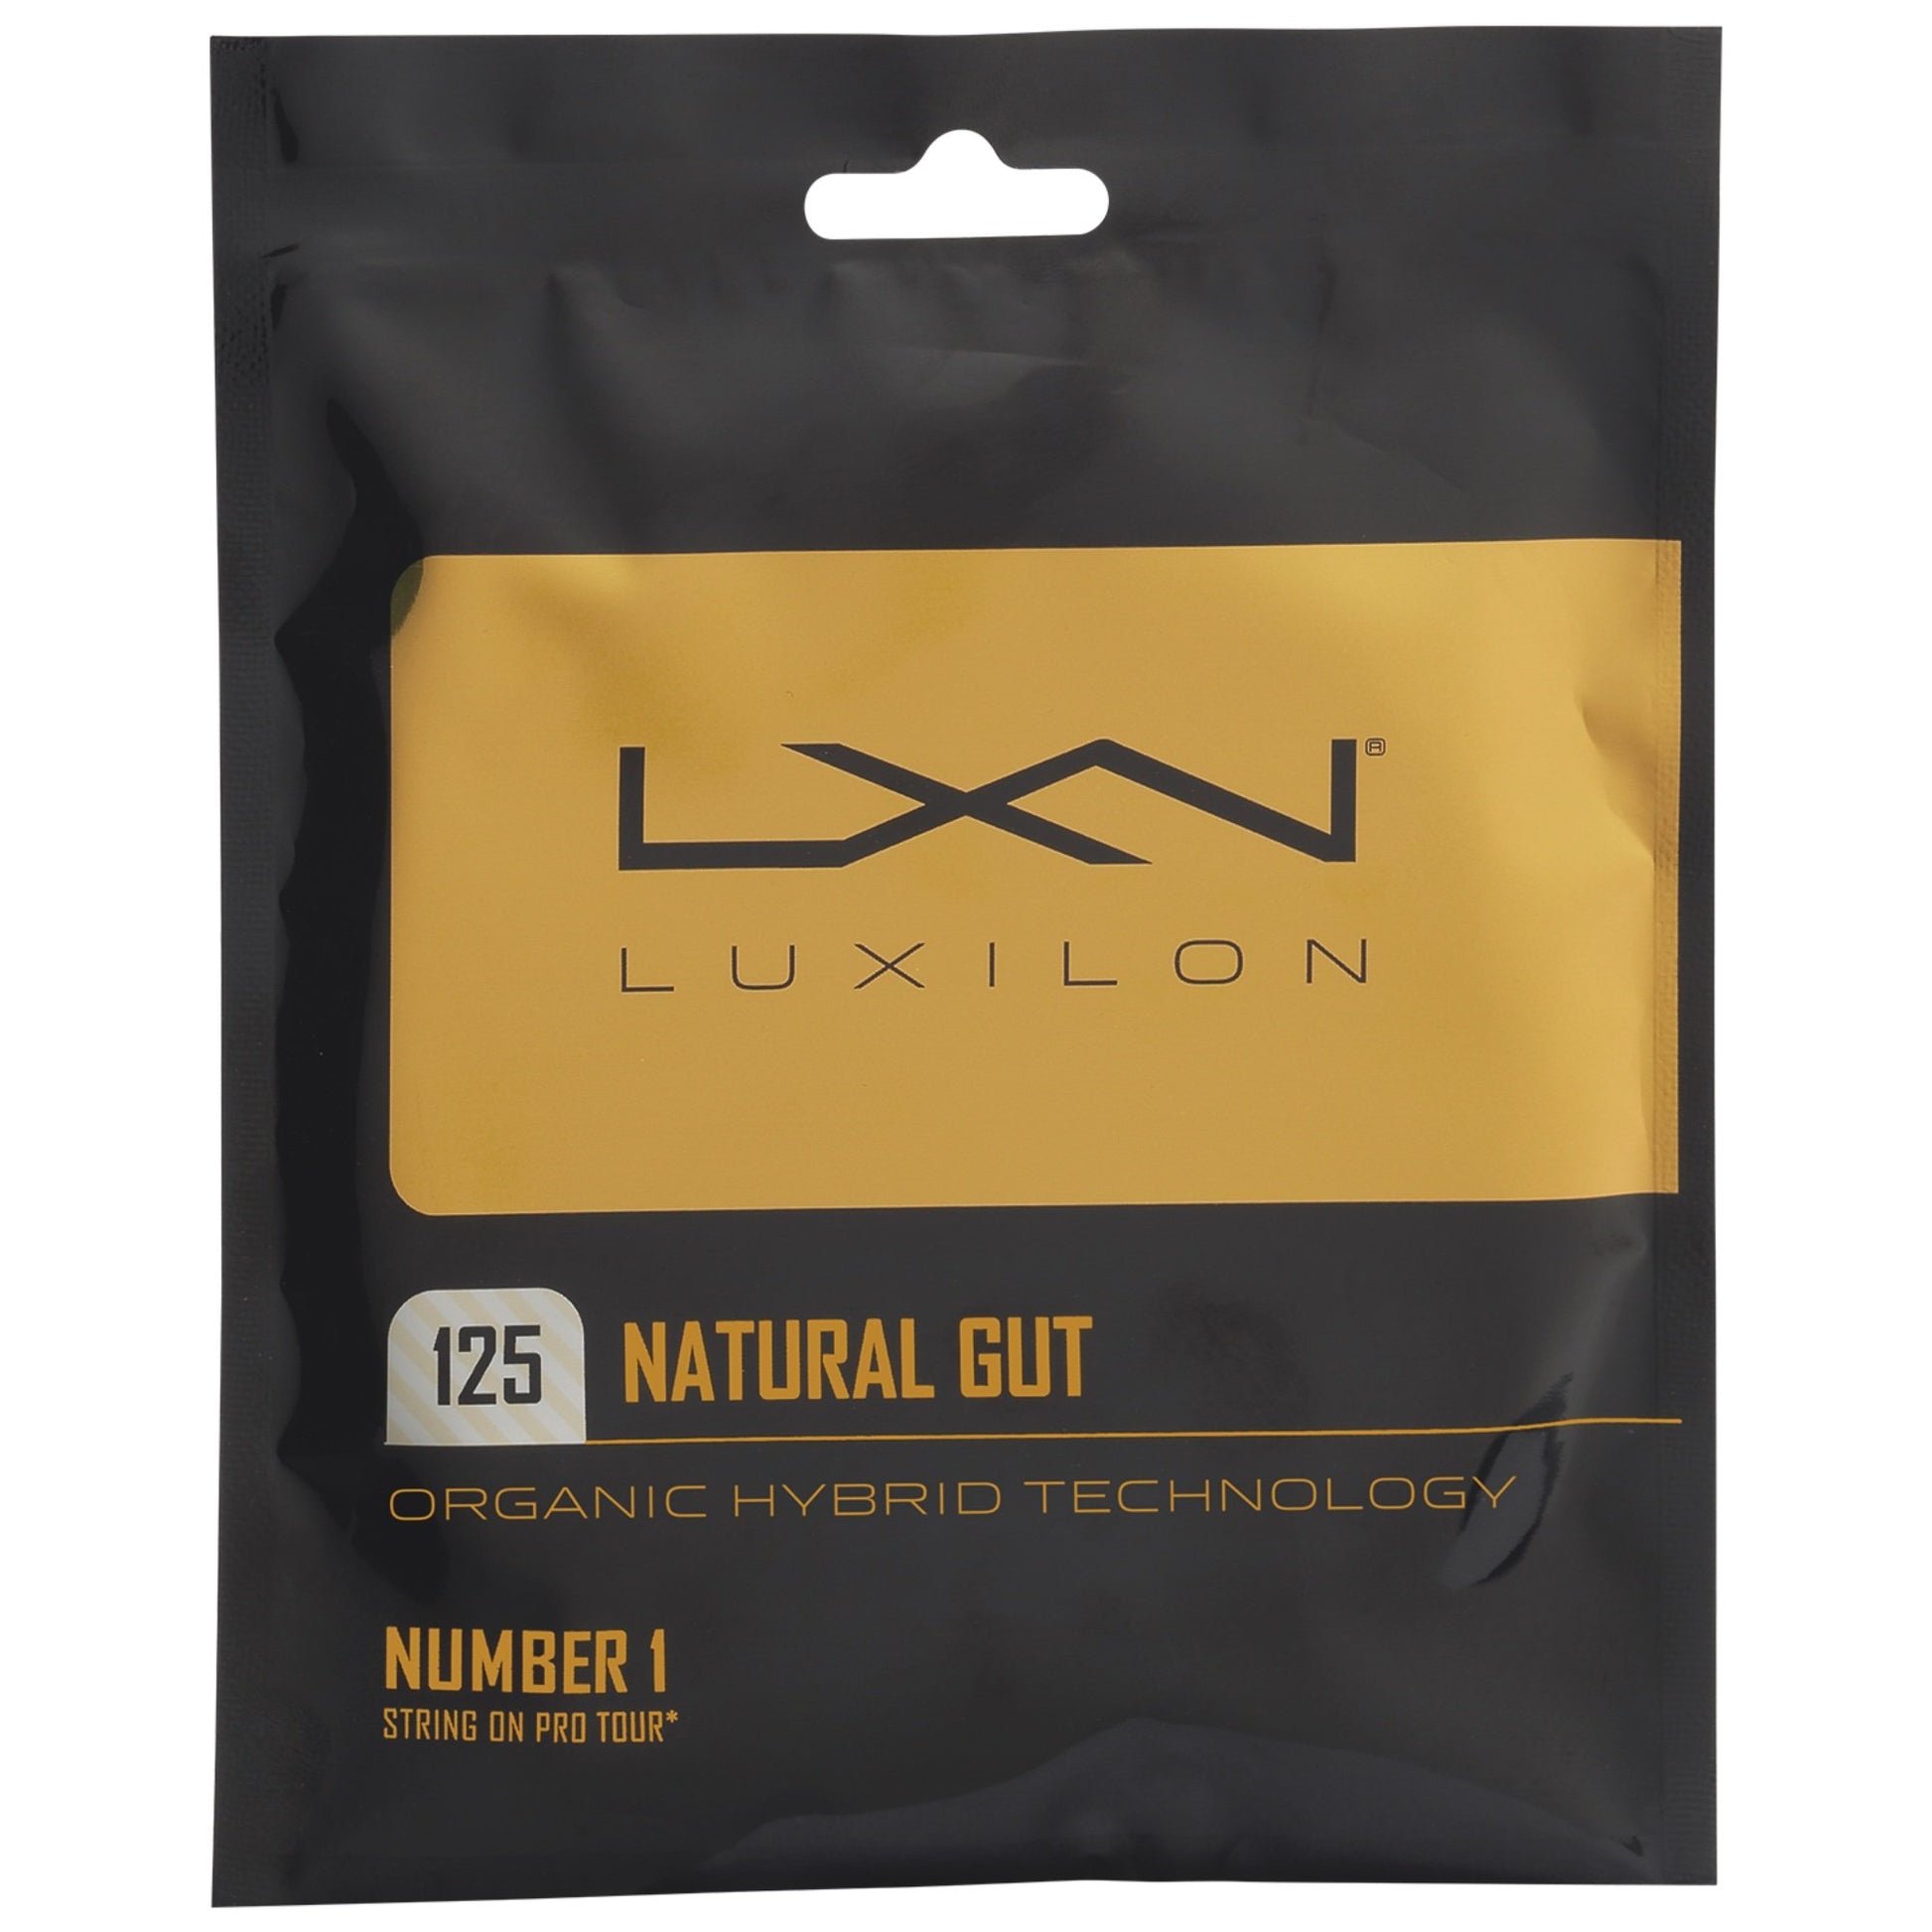 Luxilon Natural Gut tennis string set - VuTennis